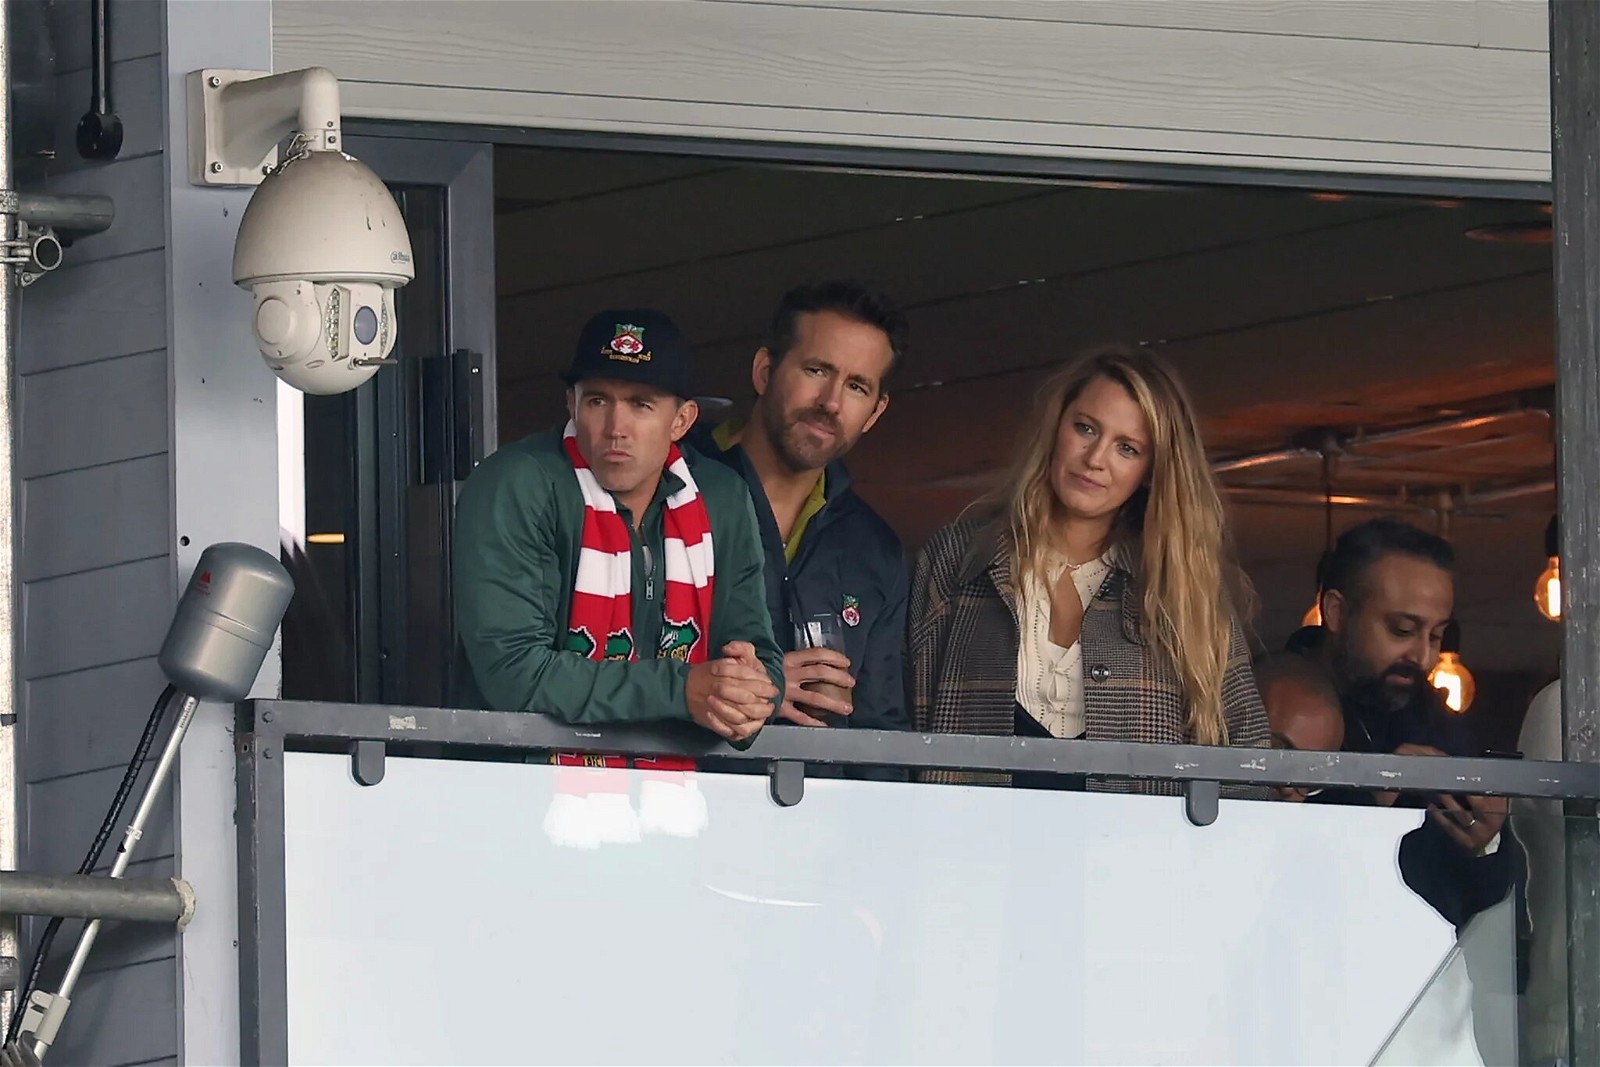 Ryan Reynolds & Blake Lively watching Wrexham FC game